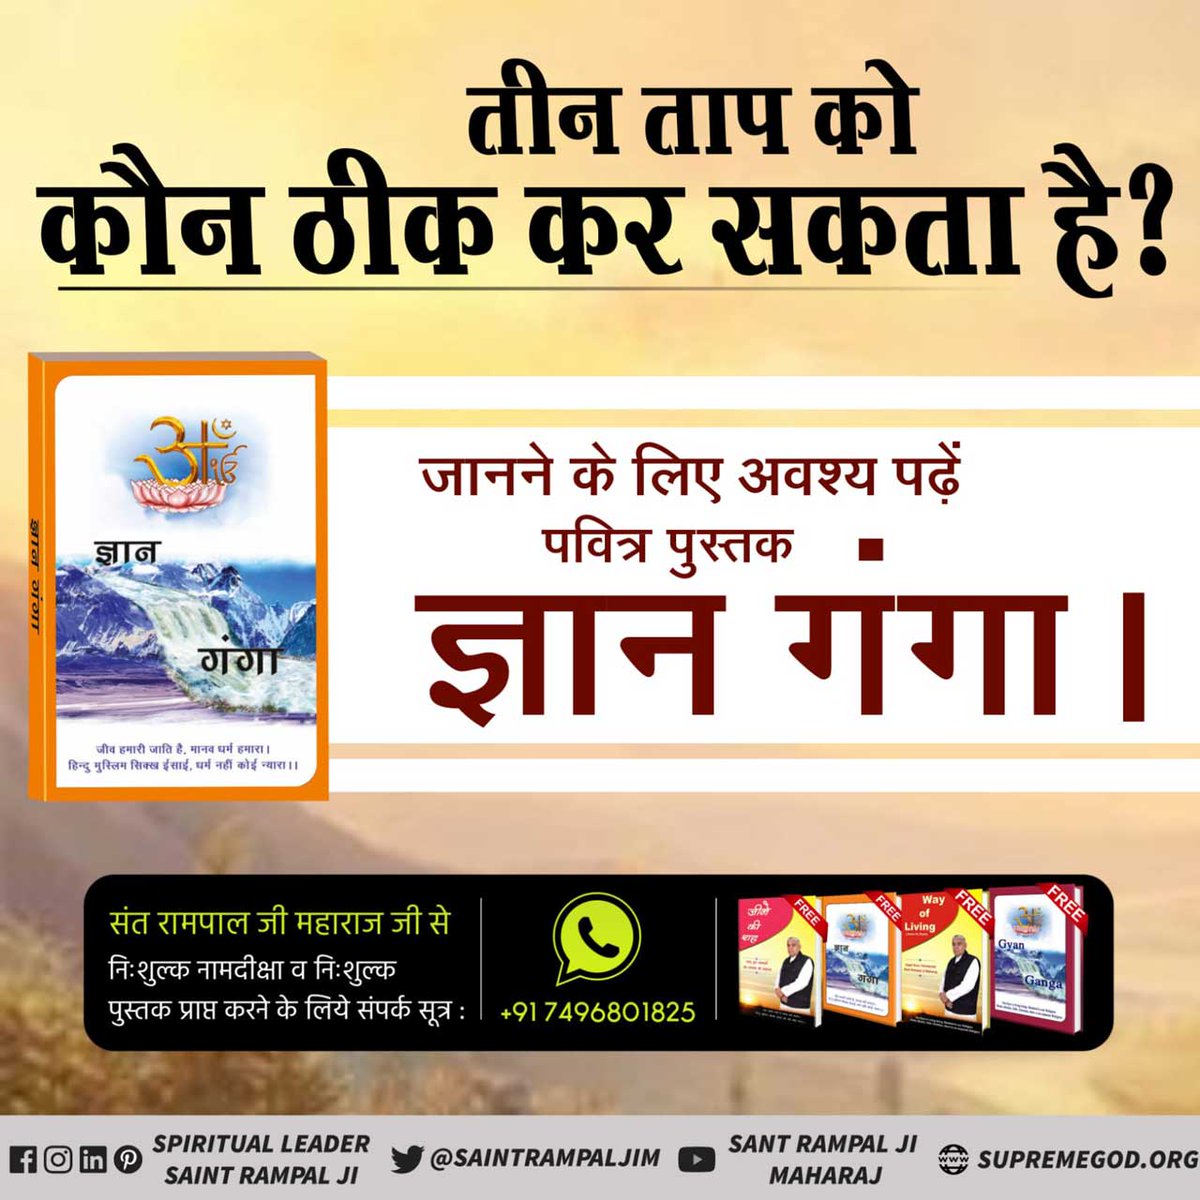 #GyanGanga #viral #hindiquotes
तीनों ताप  को कौन ठीक कर सकता है यह जानने के लिएअवश्य पढ़ें पुस्तक ज्ञान गंगा